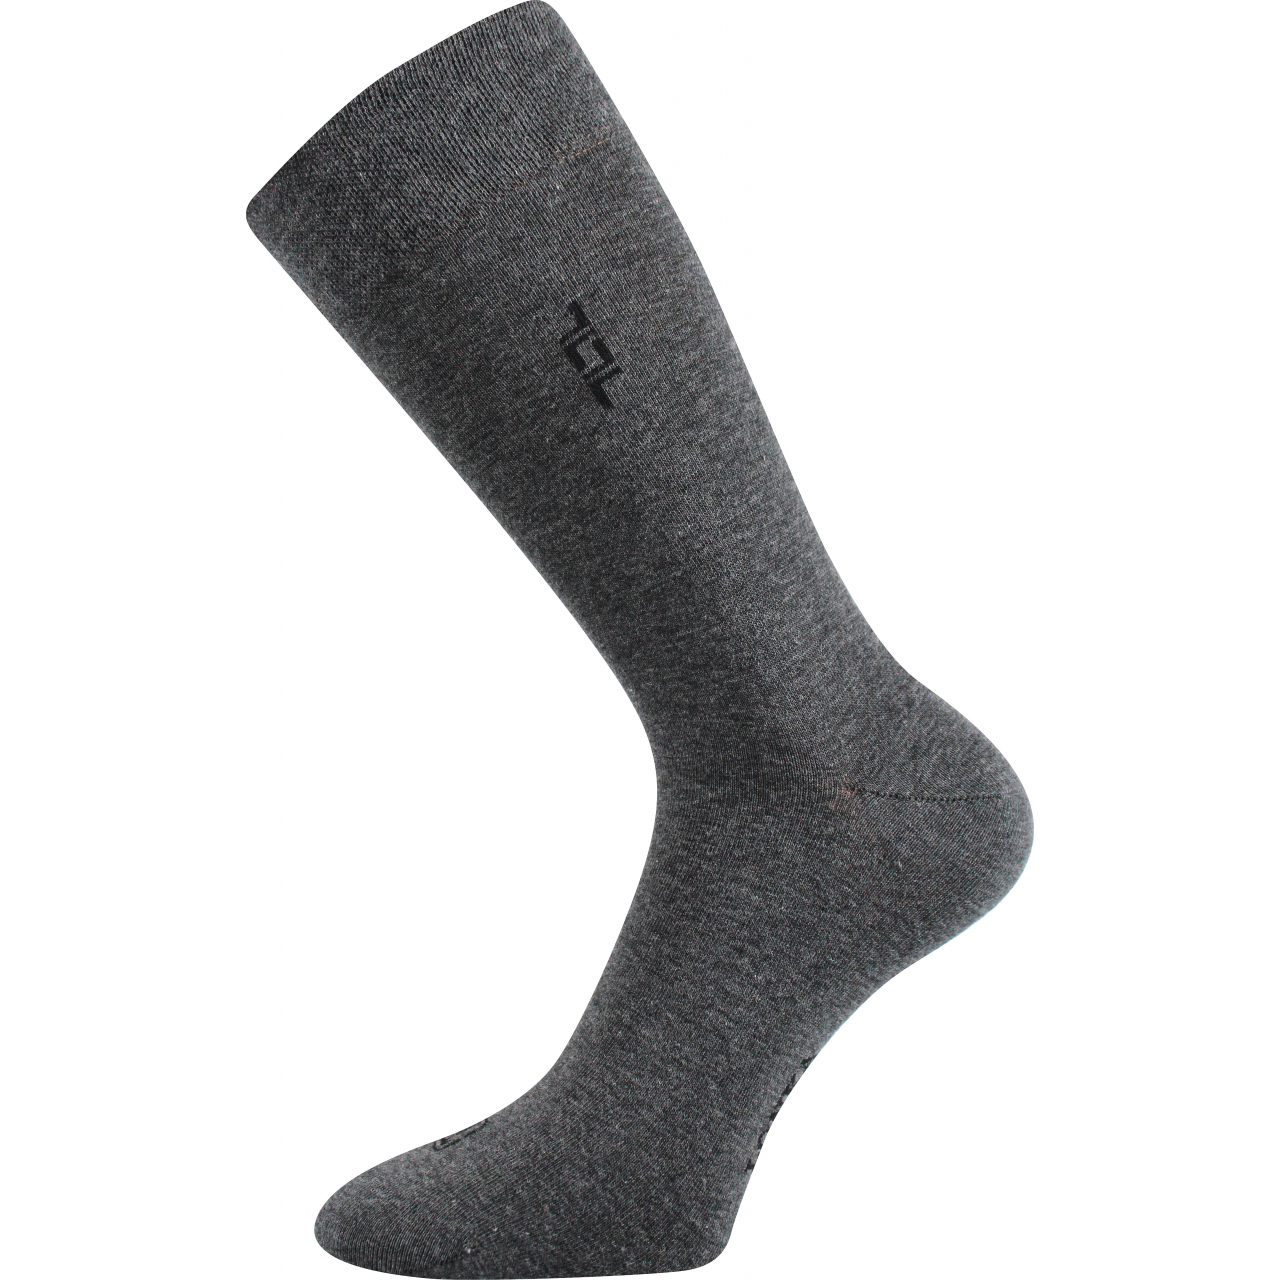 Ponožky pánské společenské Lonka Despok - středně šedé, 47-50